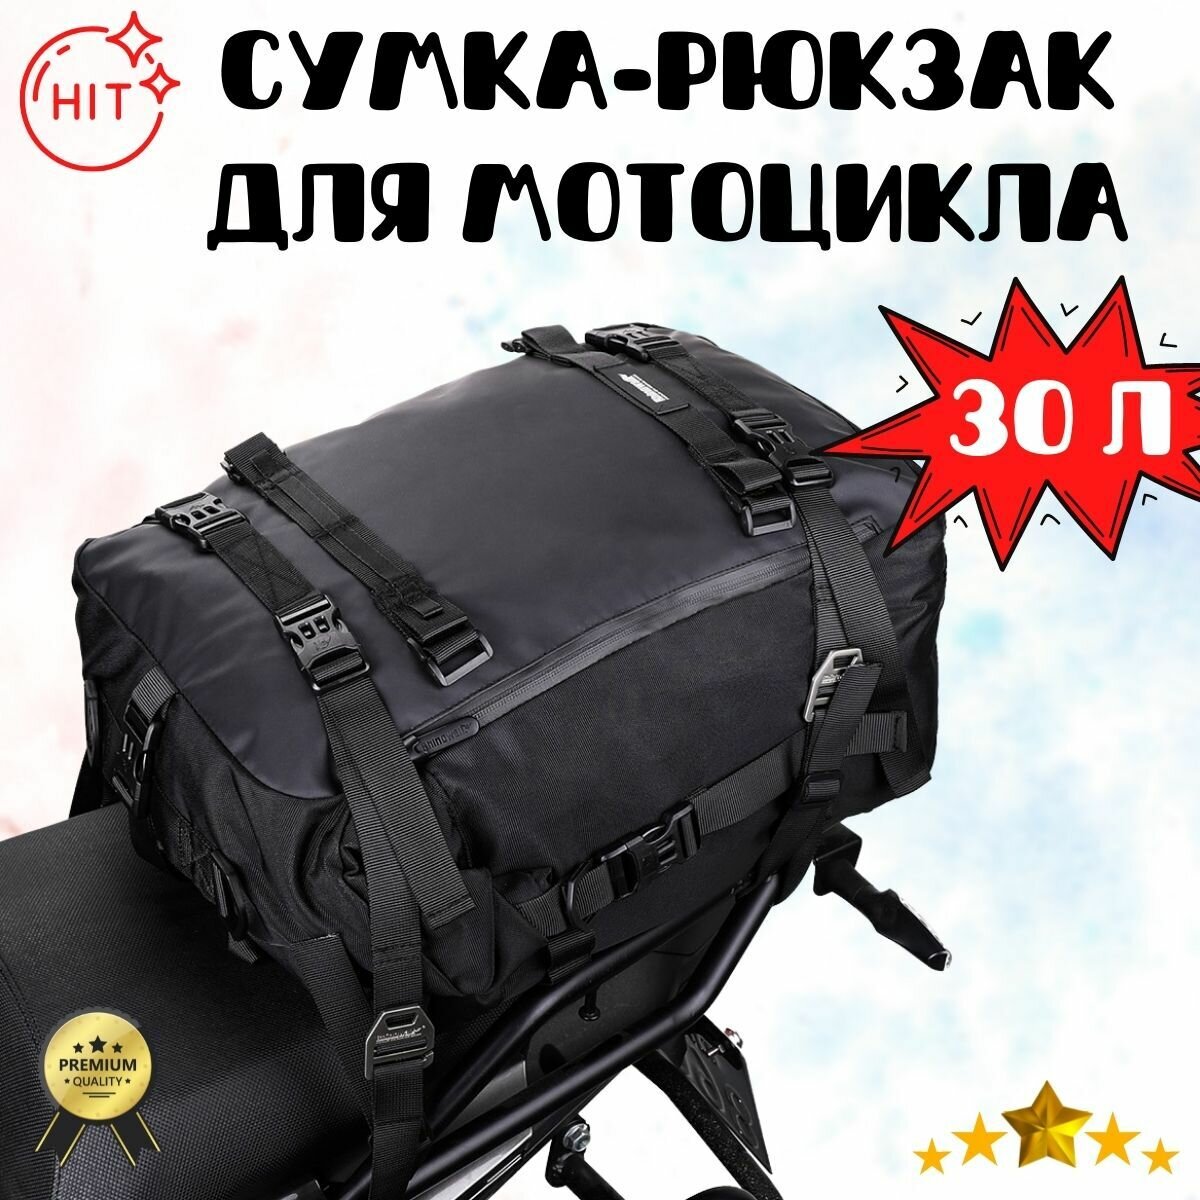 Большая многофункциональная сумка-рюкзак для мотоцикла, RHINOWALK MT216, 30 л - черная